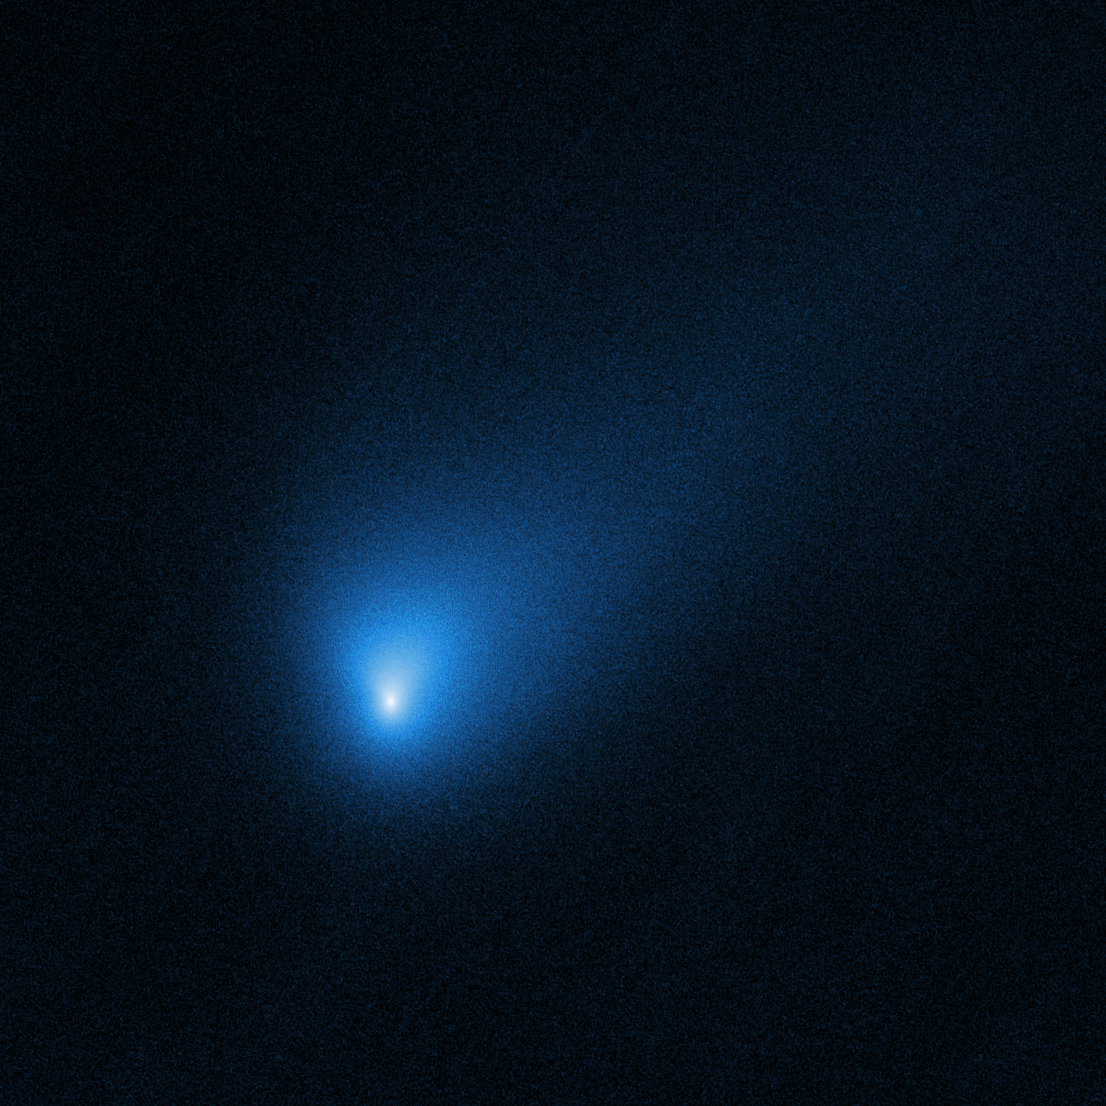 Nasa 사진을 공유의 첫 번째 성 혜성